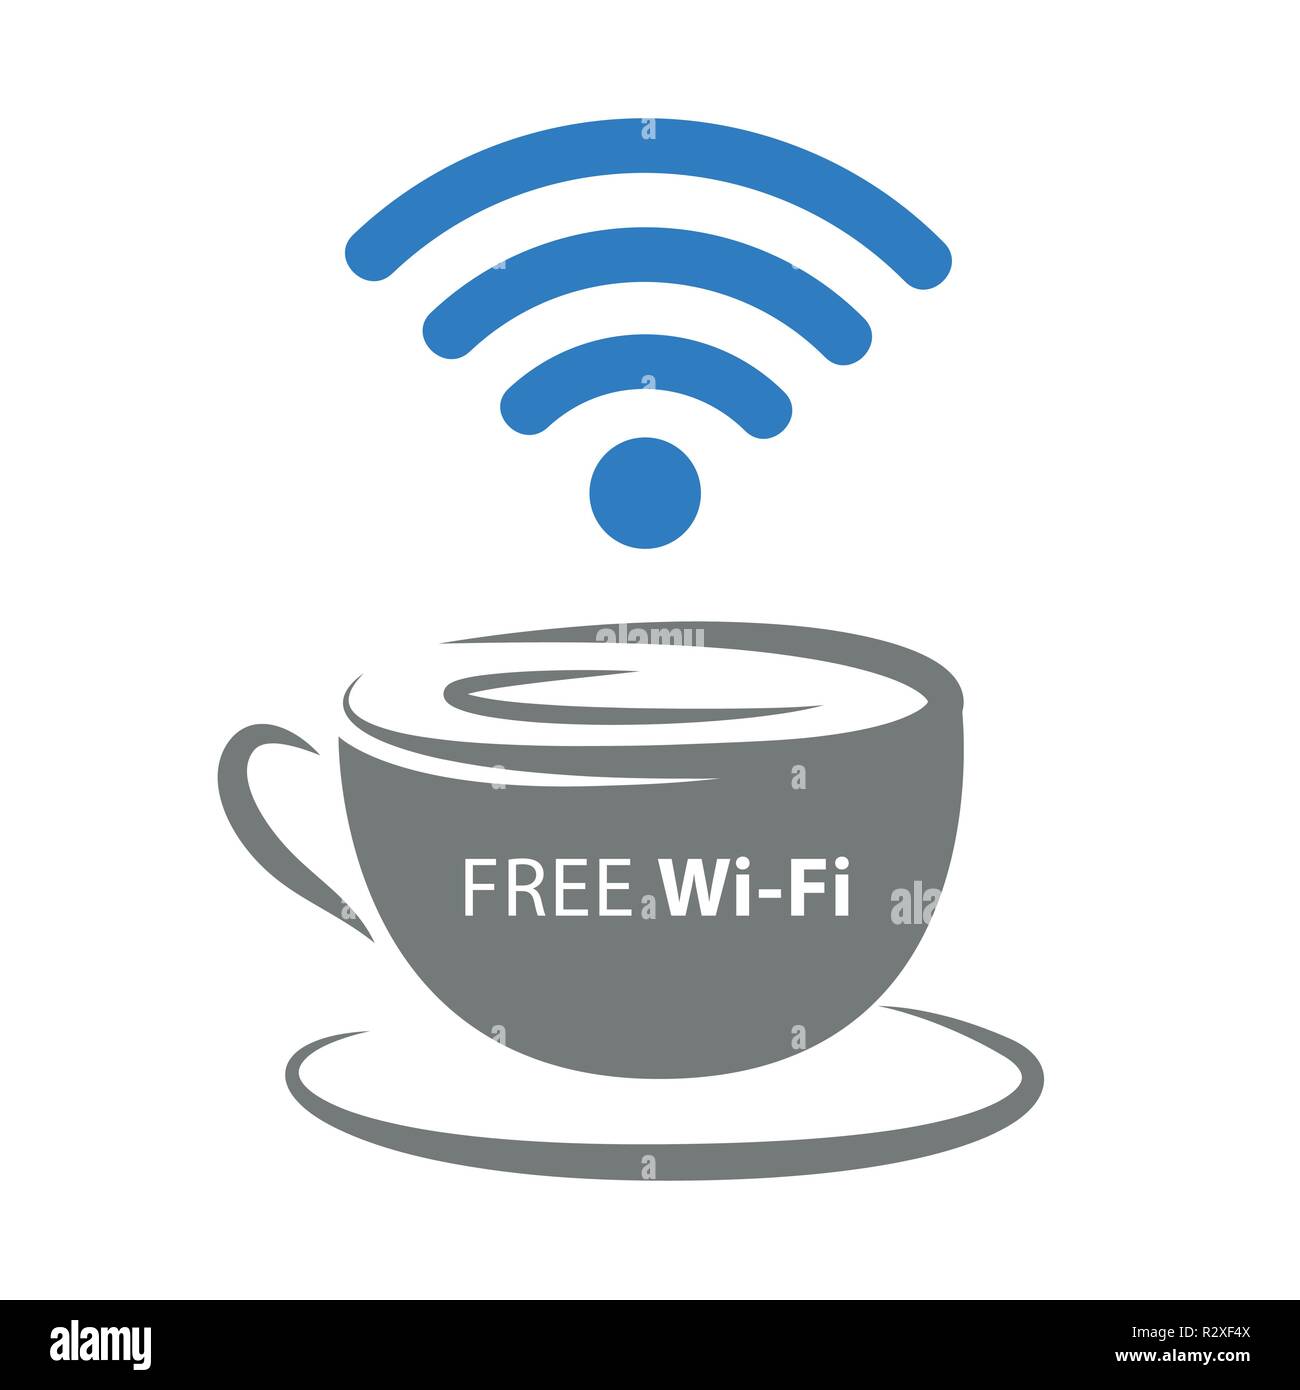 Une zone de connexion Wi-Fi gratuite avec l'icône de tasse à café et du signal sans fil bleu illustration vecteur EPS10 Illustration de Vecteur